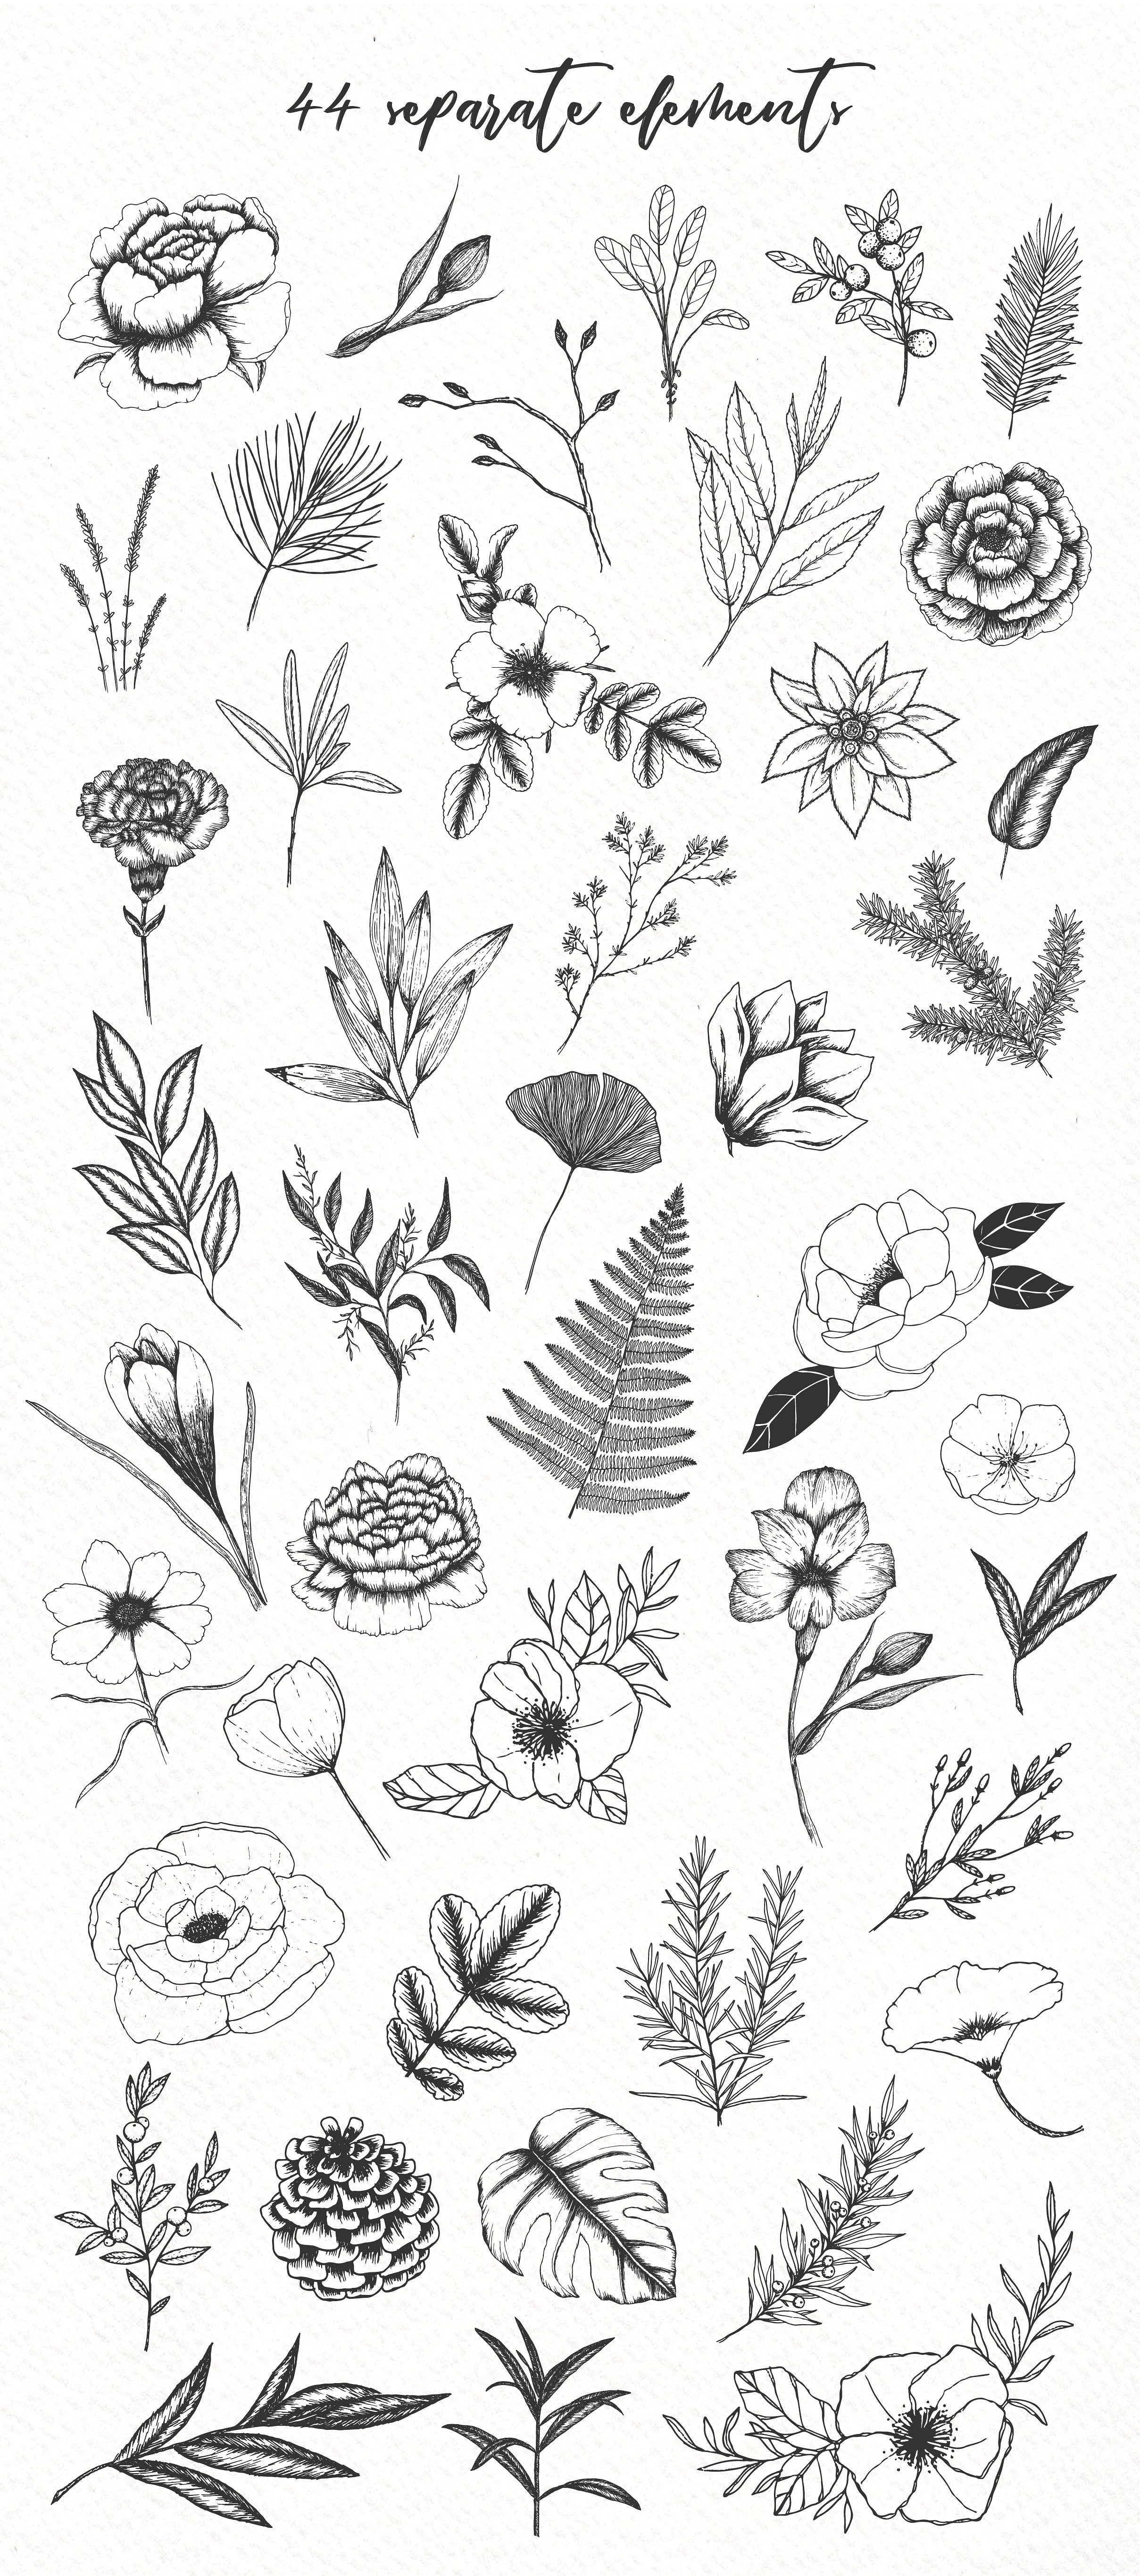 极简主义手绘植物插图包插图(1)